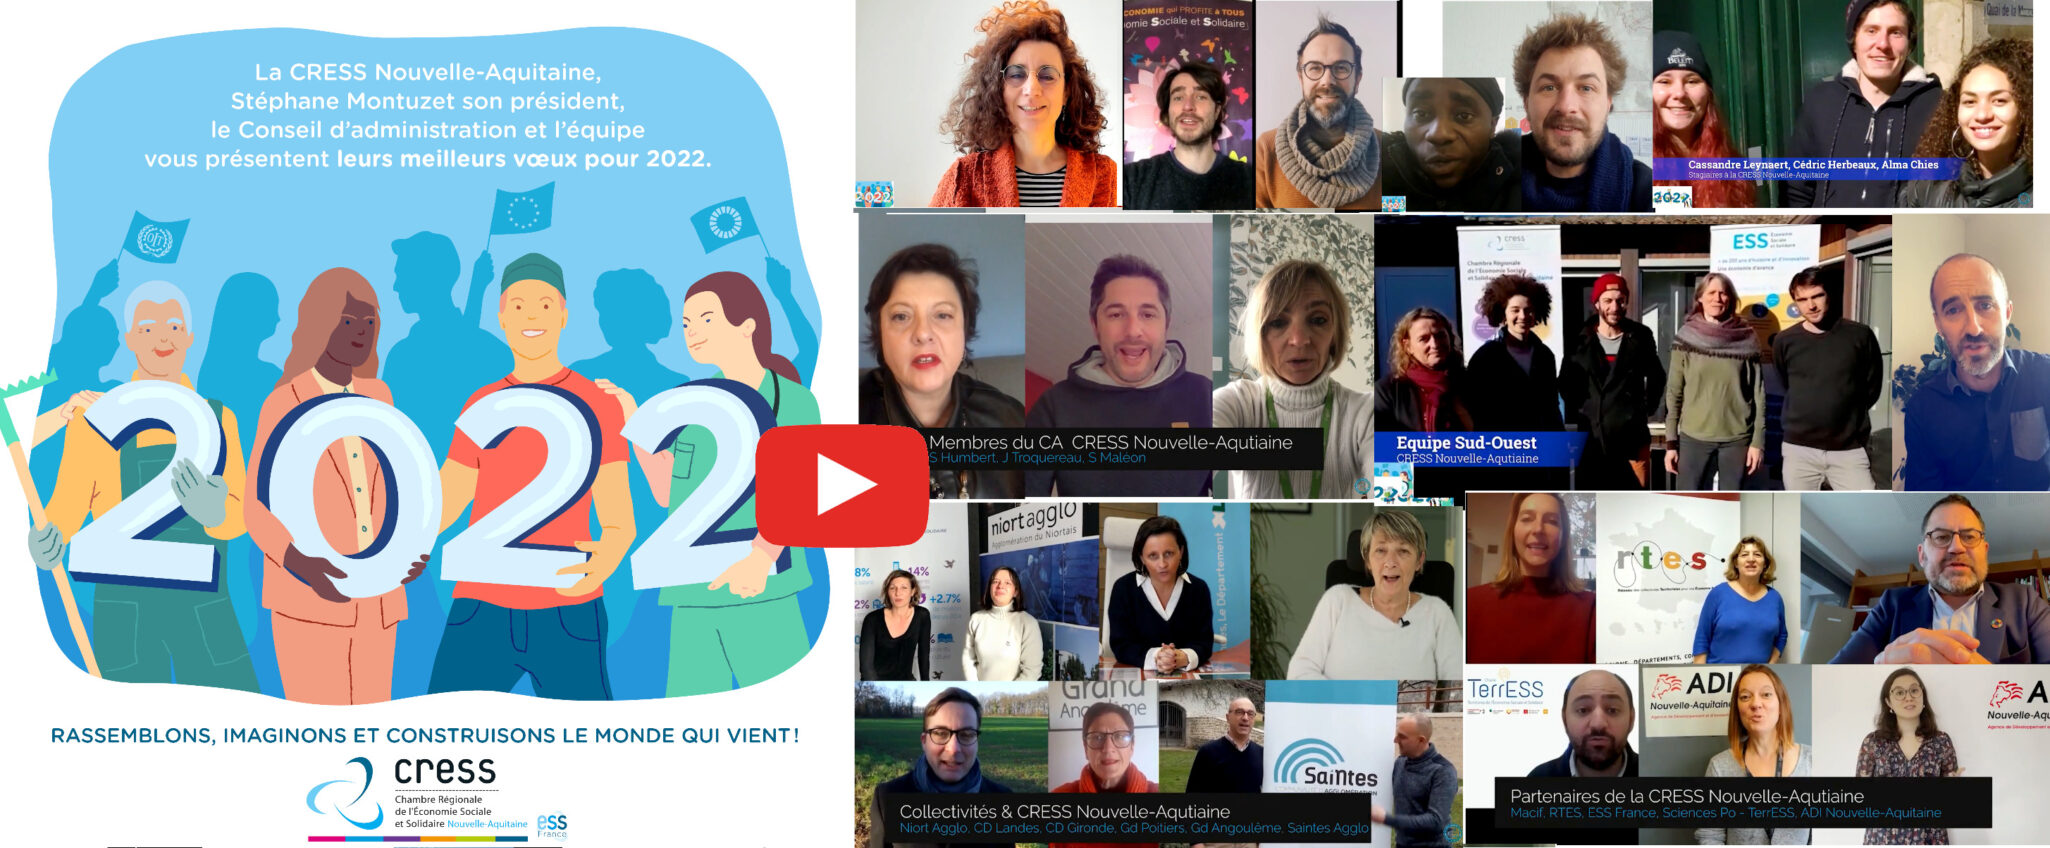 📺 2021 c’était… 2022 ce sera ! Vidéo des voeux de la CRESS Nouvelle-Aquitaine